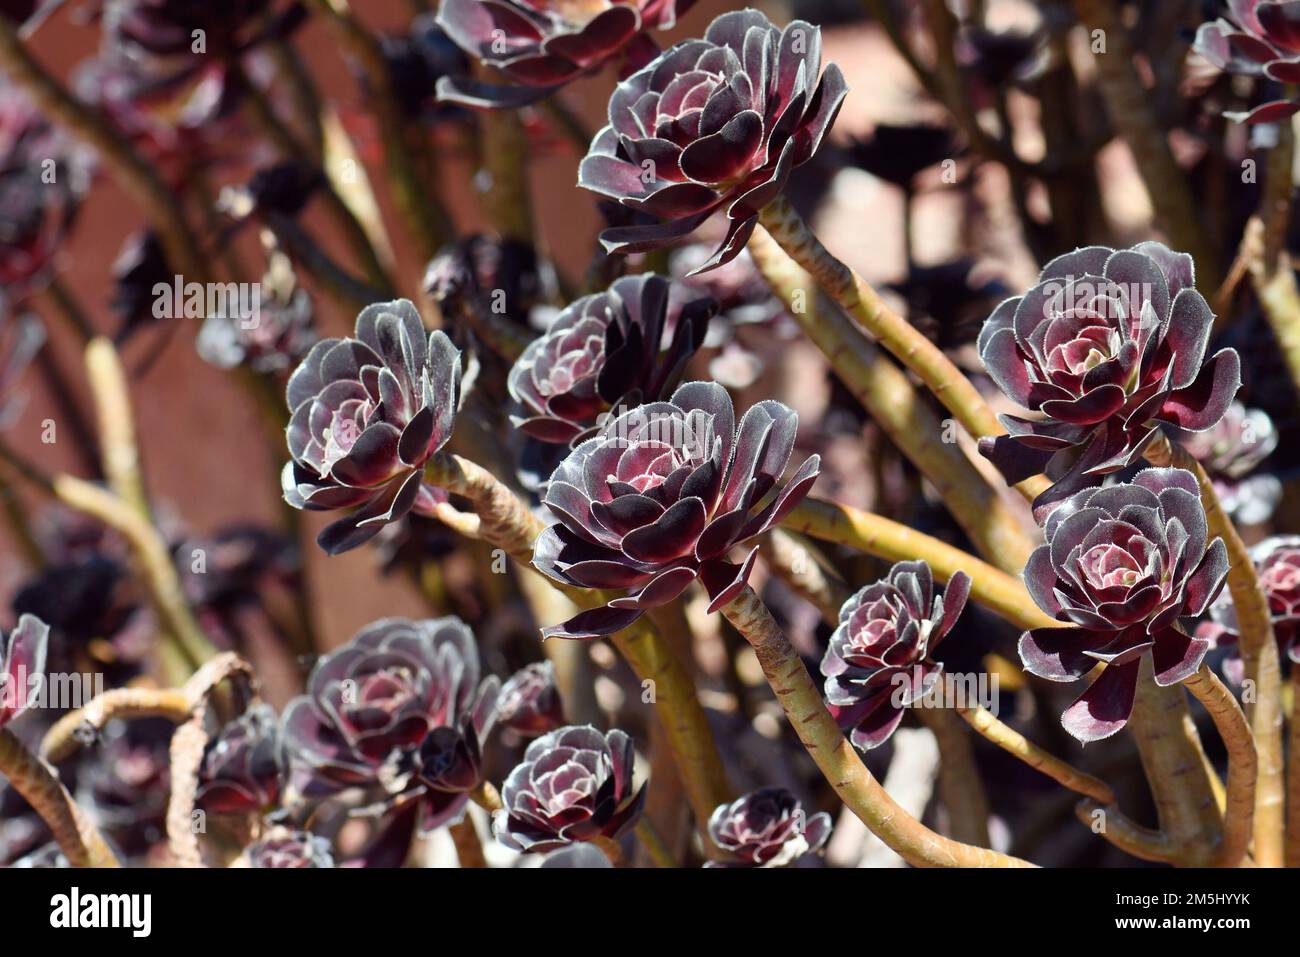 Burgundy dark purple red foliage and rosettes of the succulent plant Aeonium arboretum atropurpureum, family Crassulaceae. Endemic to Canary Islands Stock Photo